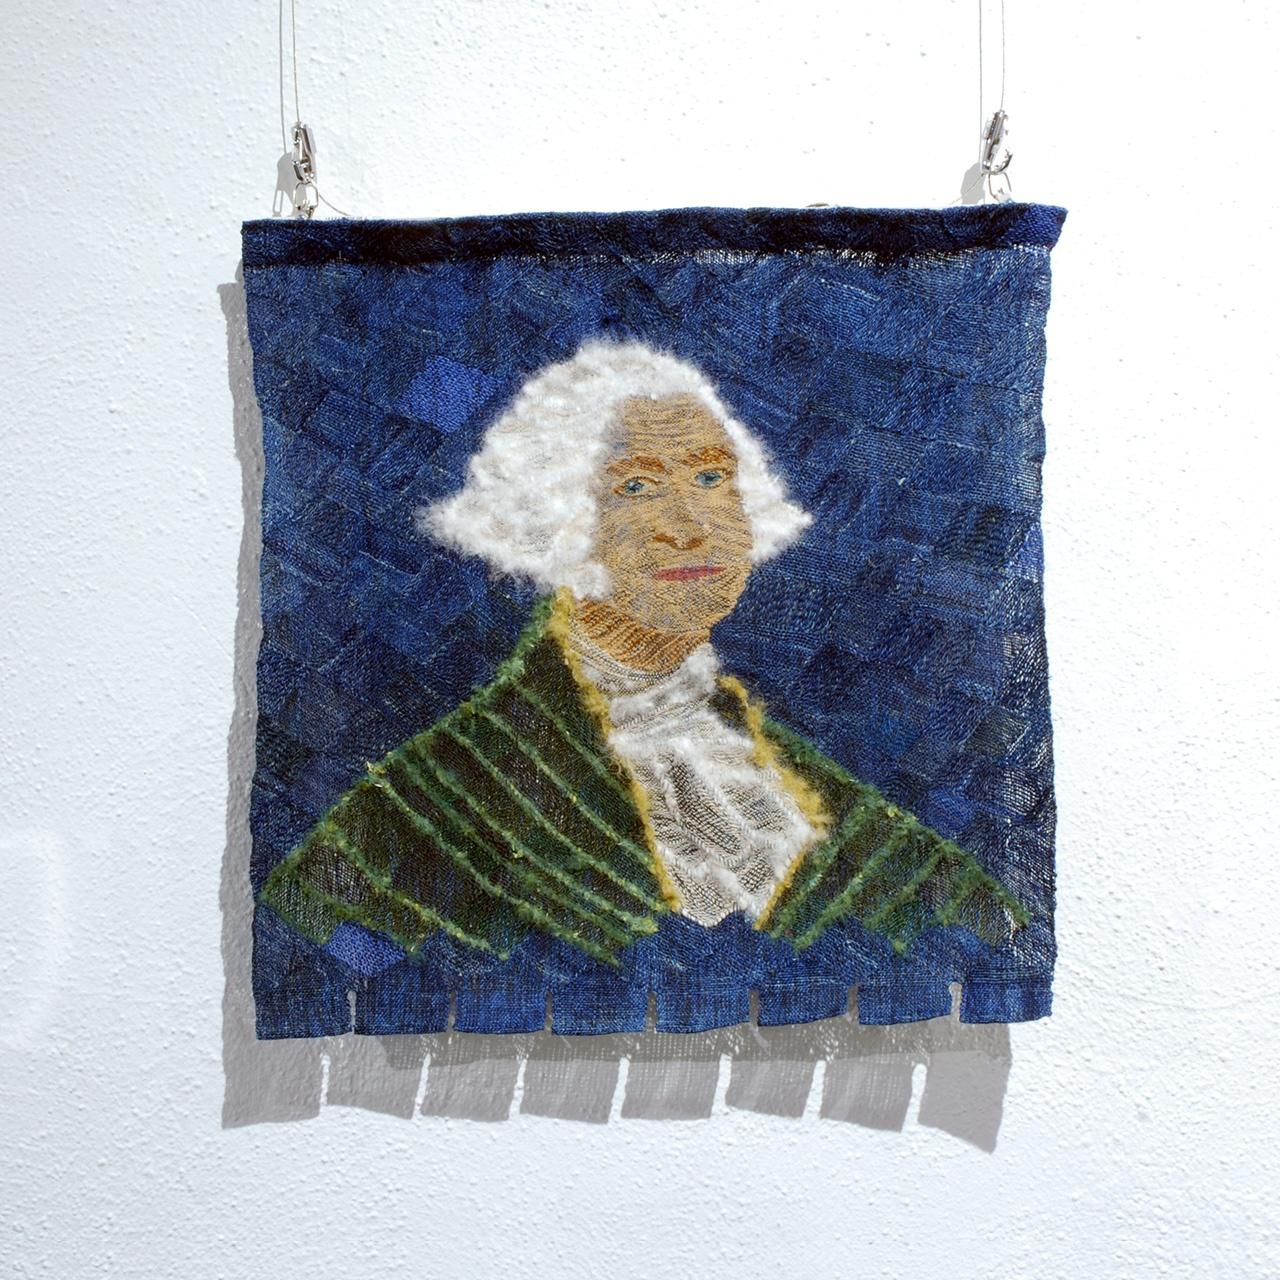 Objects, Borders and Neighbors, Jim Bassler, "George Washington", Feather yarn, indigo-dyed, 2016